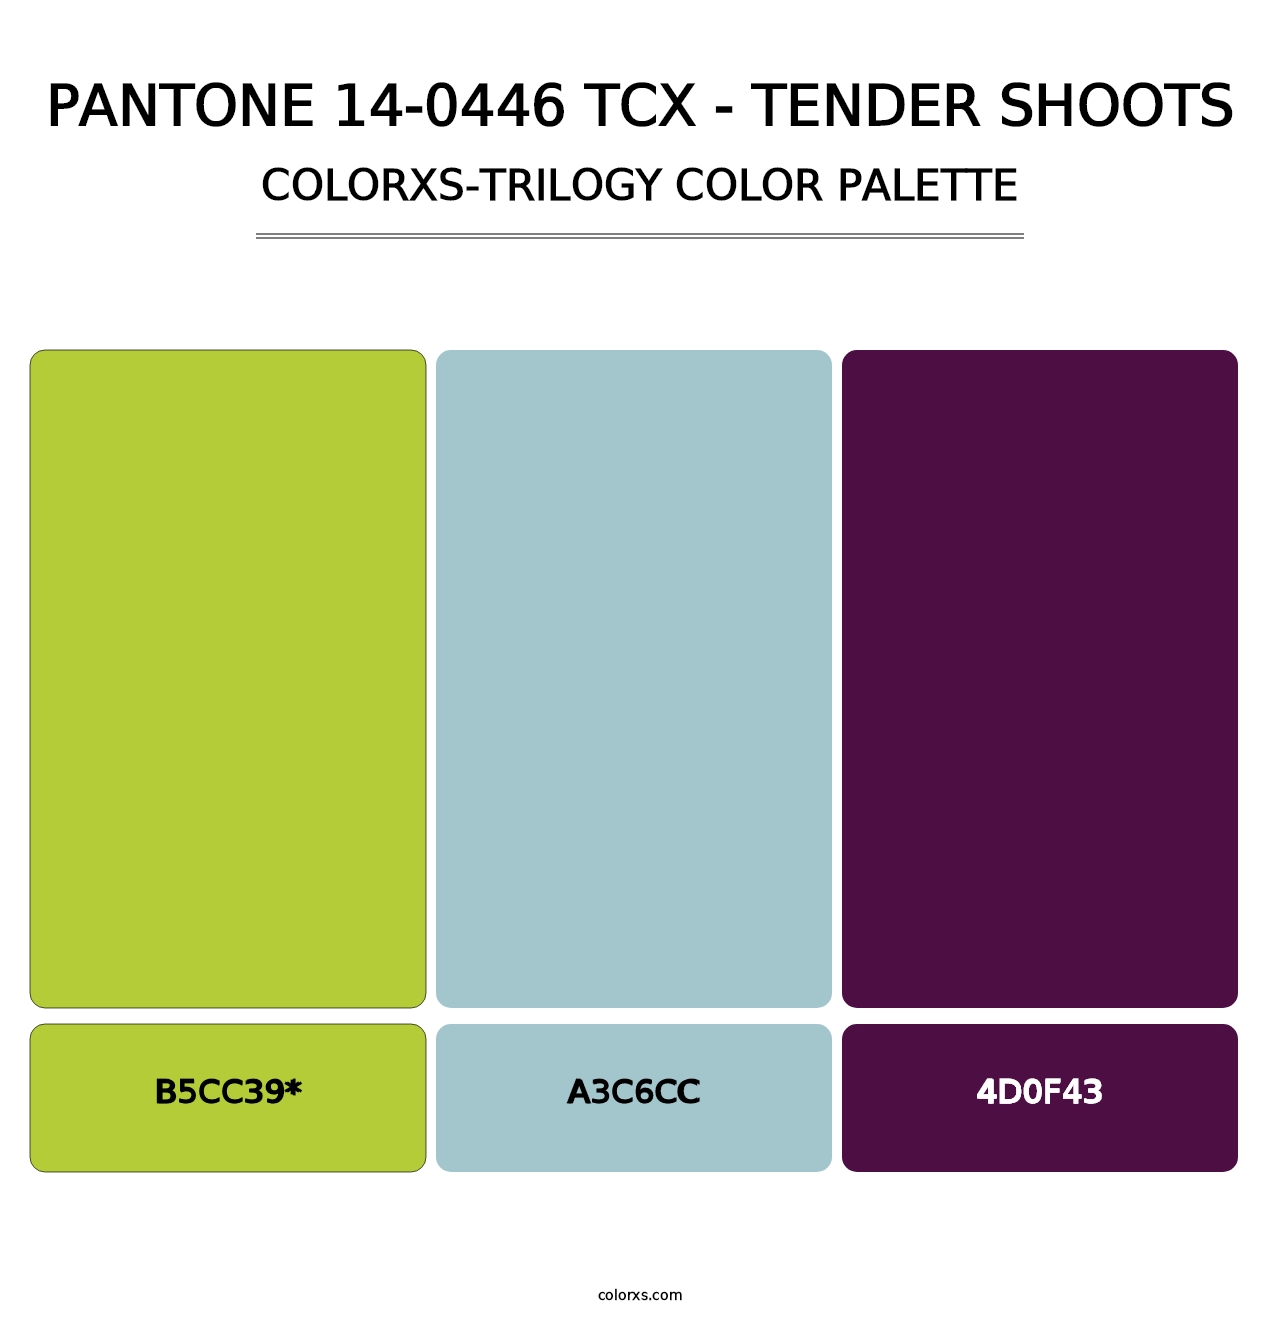 PANTONE 14-0446 TCX - Tender Shoots - Colorxs Trilogy Palette